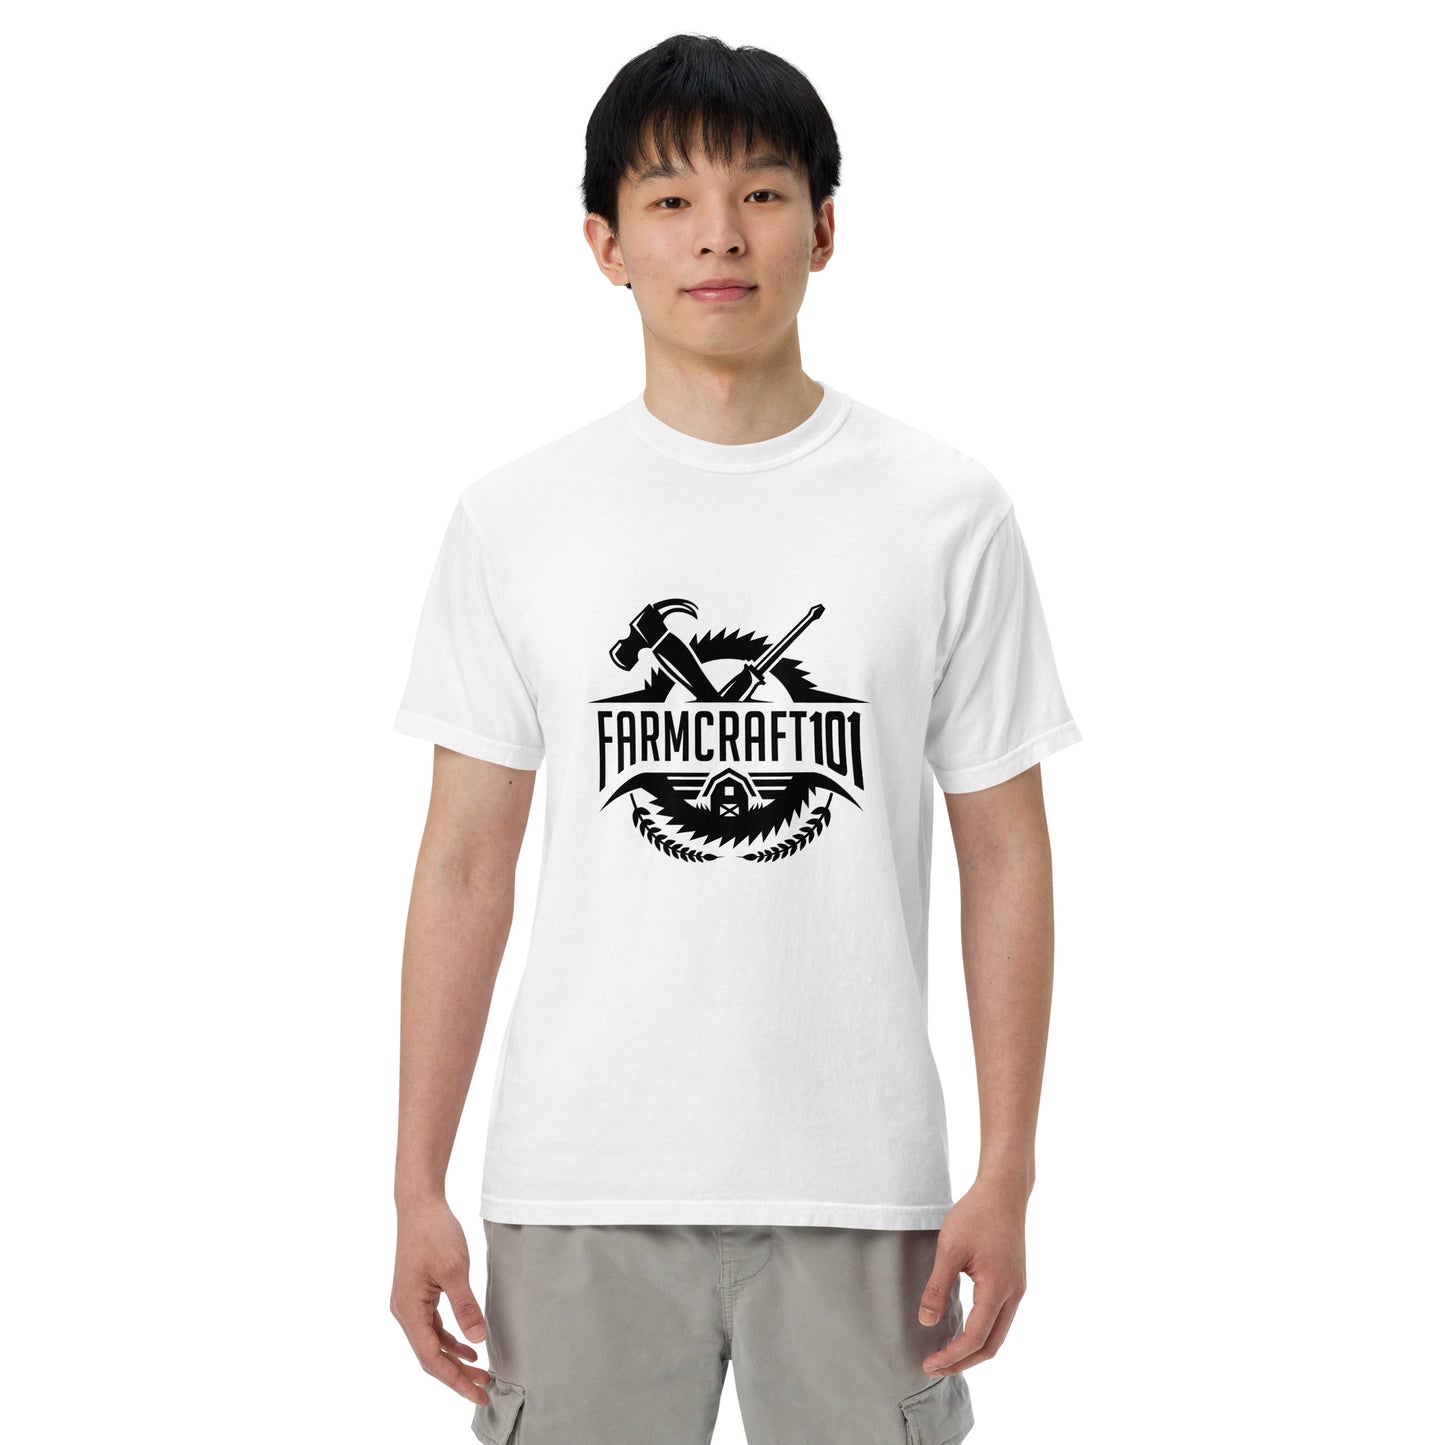 Heavyweight t-shirt FarmCraft101 logo t-shirt